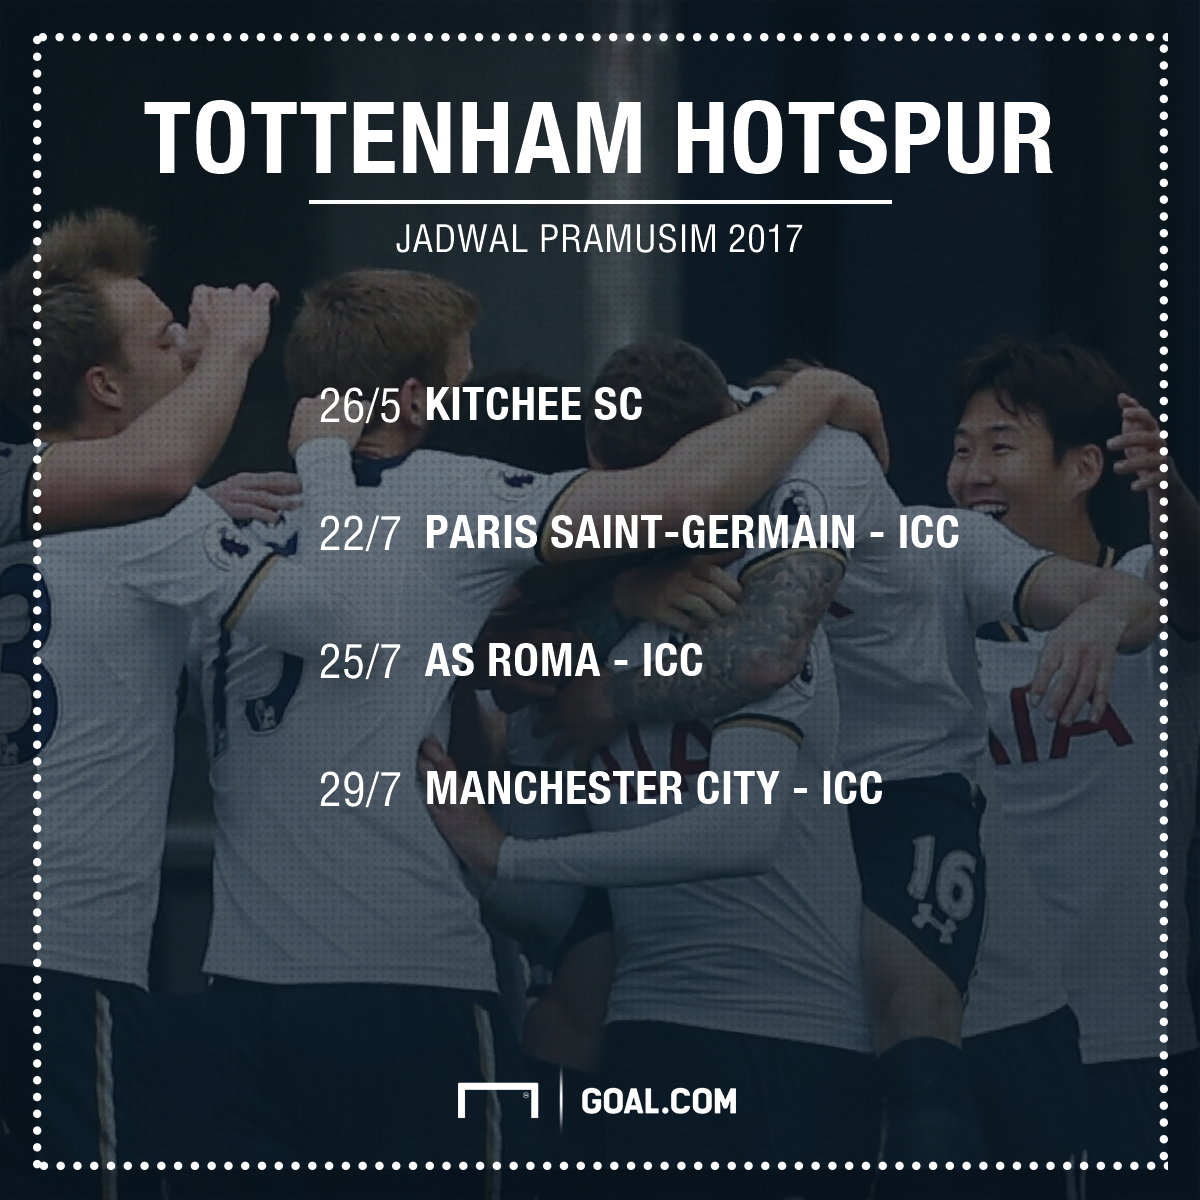 Agenda Pramusim 2017 Tottenham Hotspur Goalcom